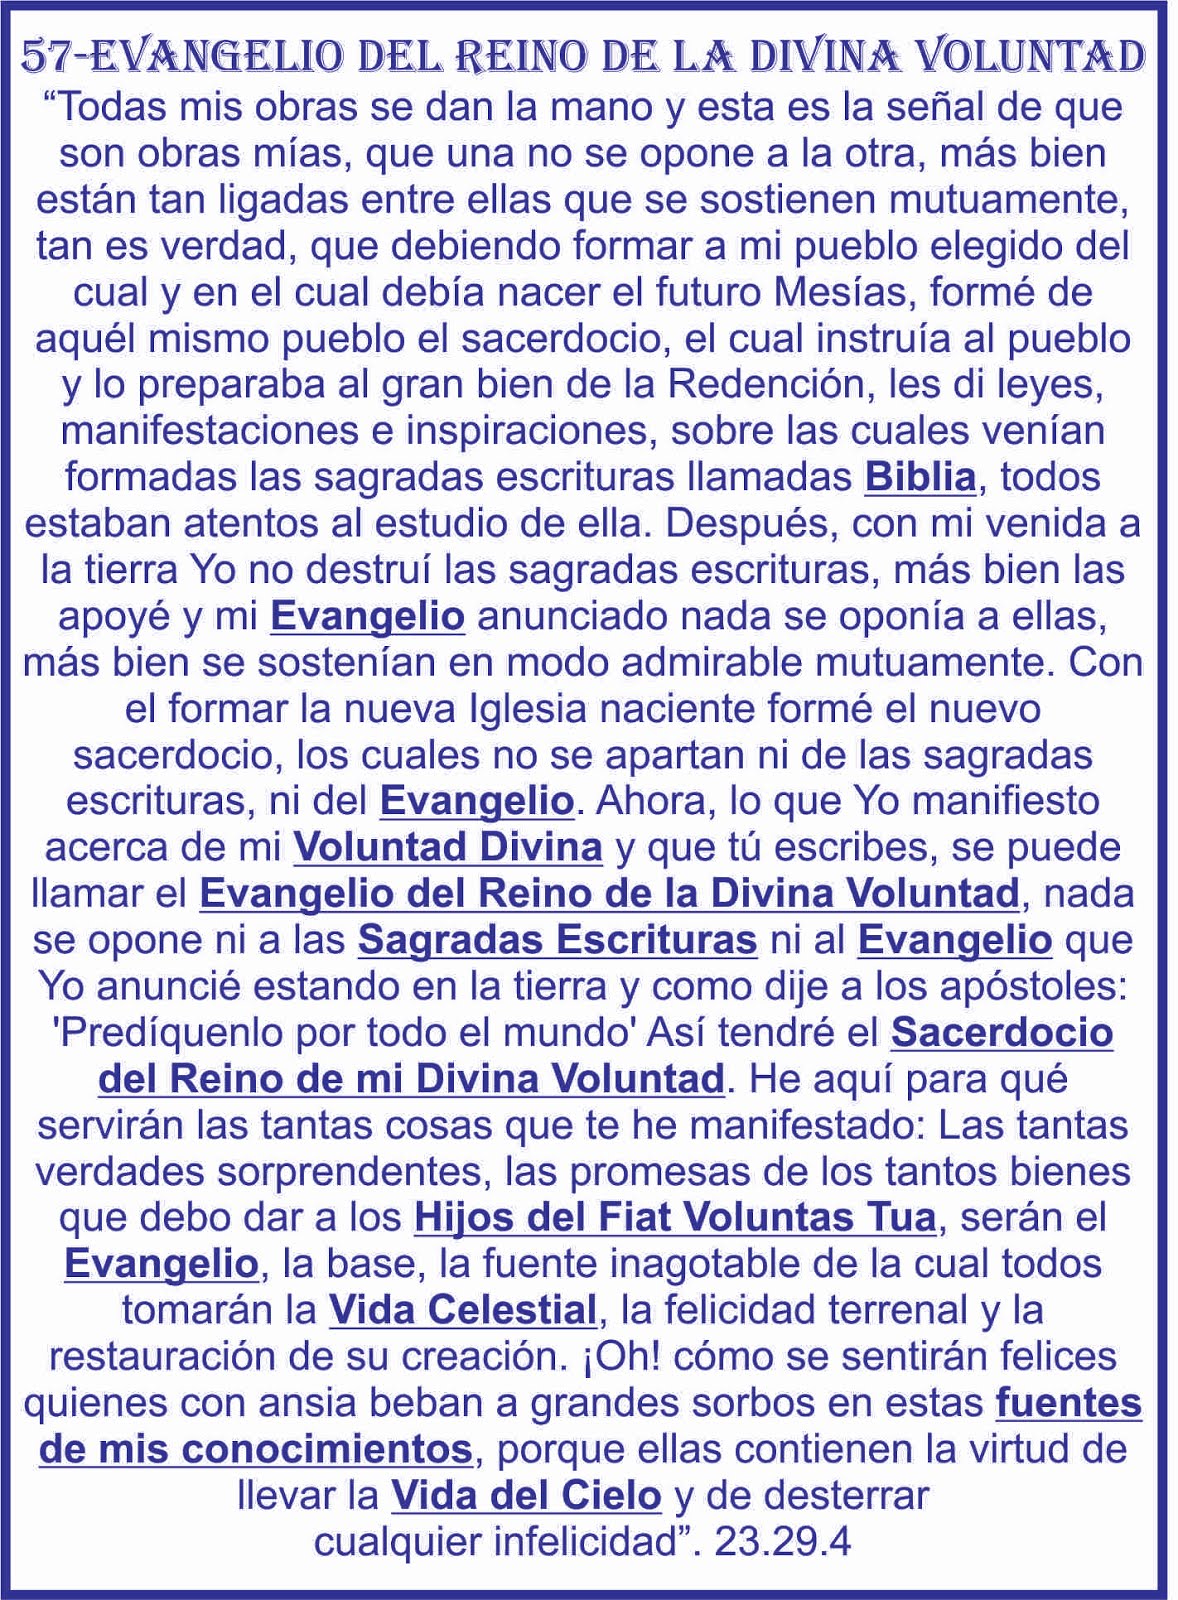 57-EVANGELIO DEL REINO DE LADIVINA VOLUNTAD